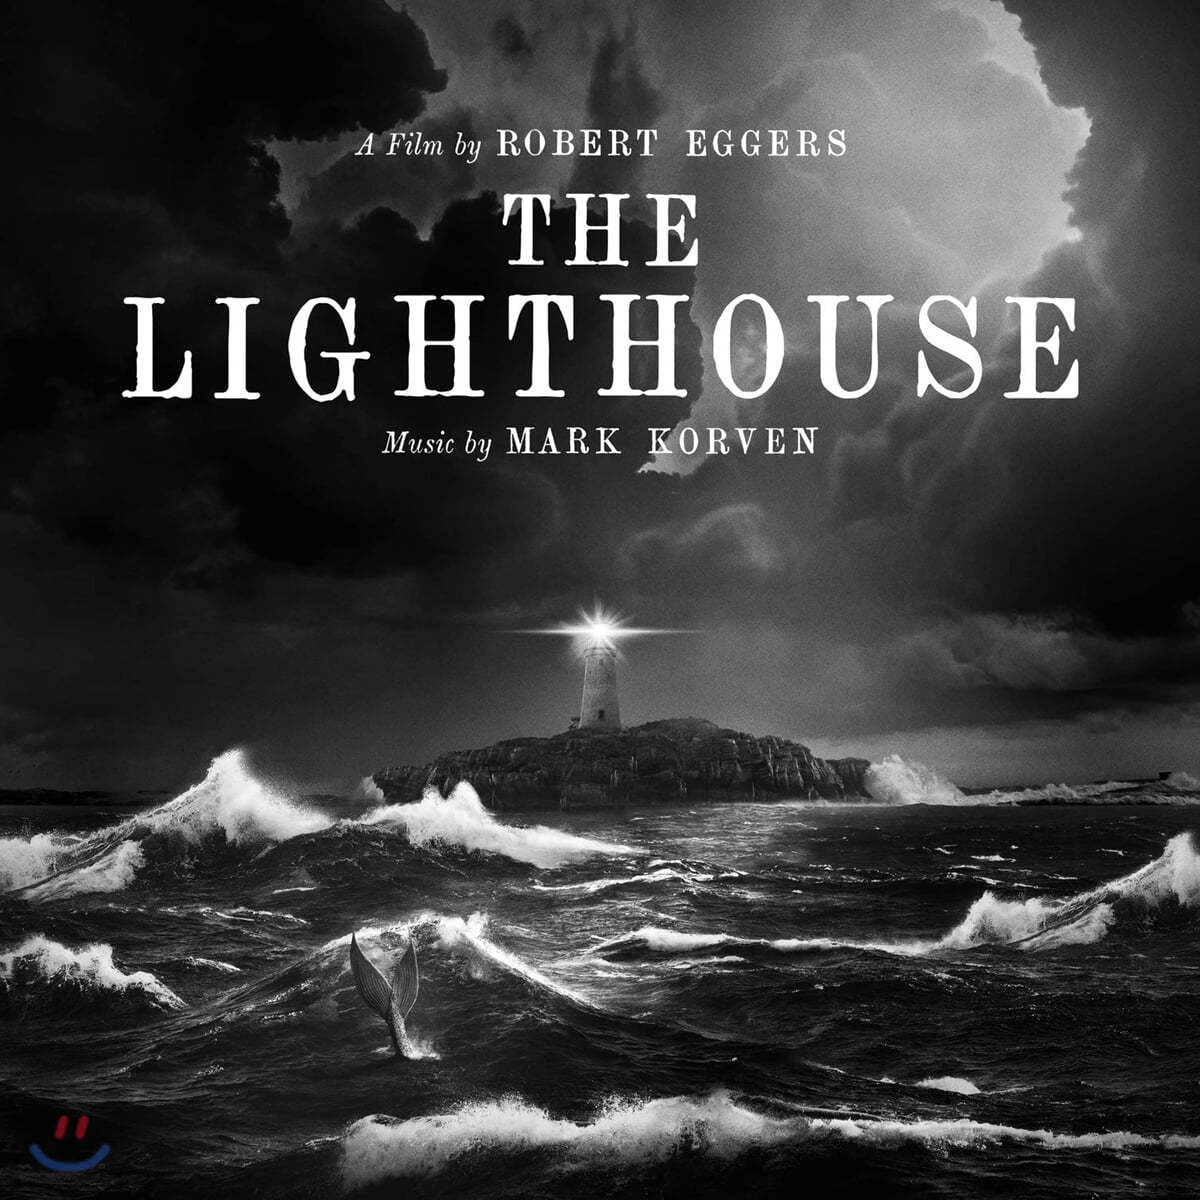 더 라이트하우스 영화음악 (The Lighthouse Original Motion Picture Soundtrack by Mark Korven)